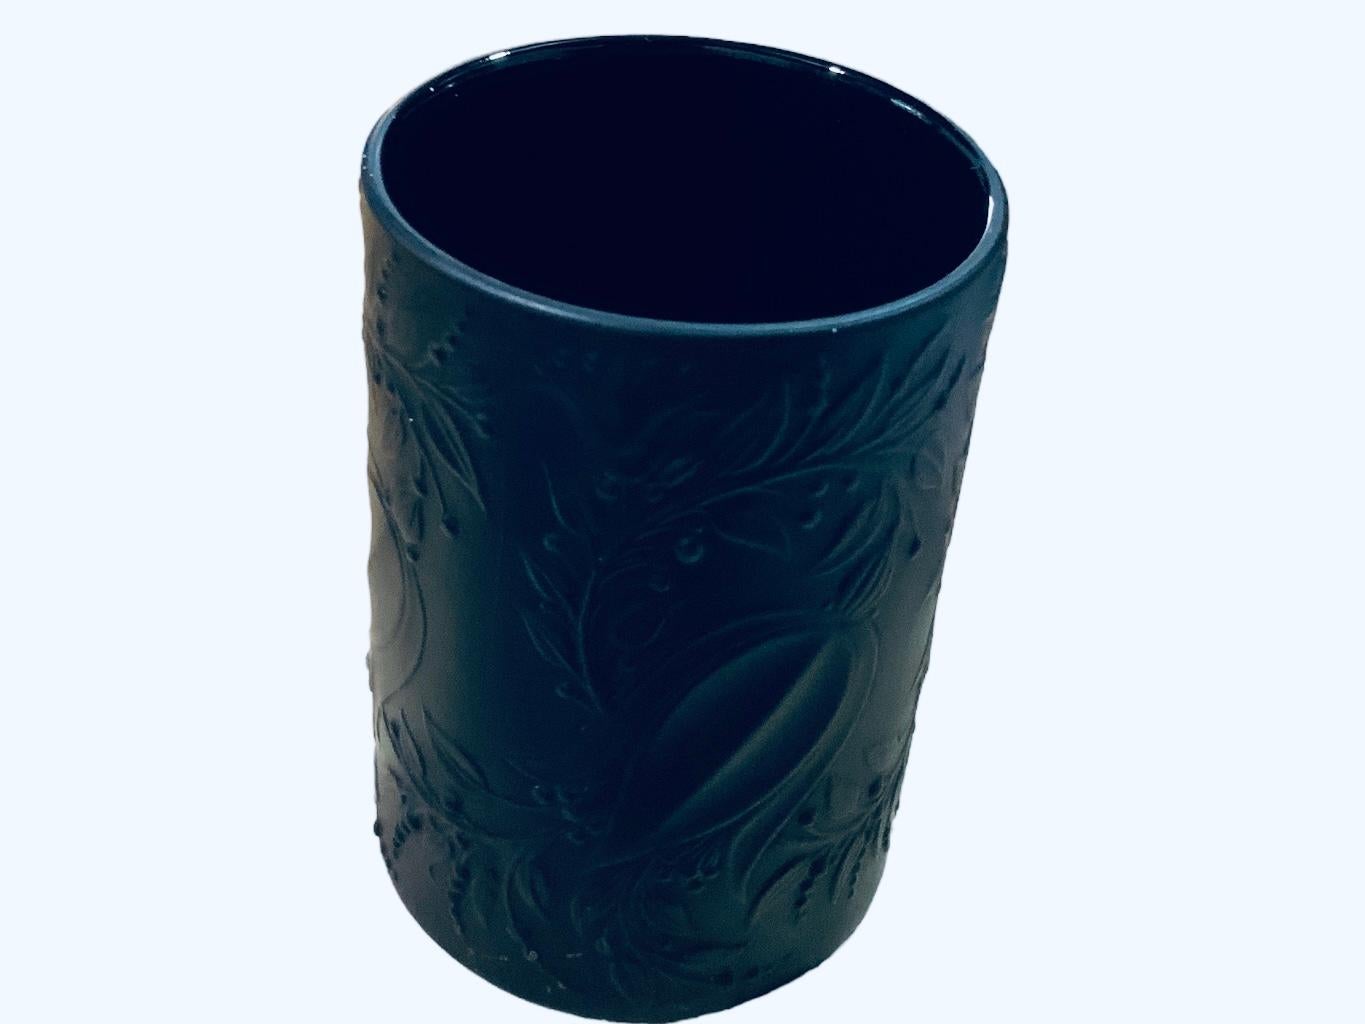 German Rosenthal Studio Bjorn Winblad Black Porcelain Small Vase For Sale